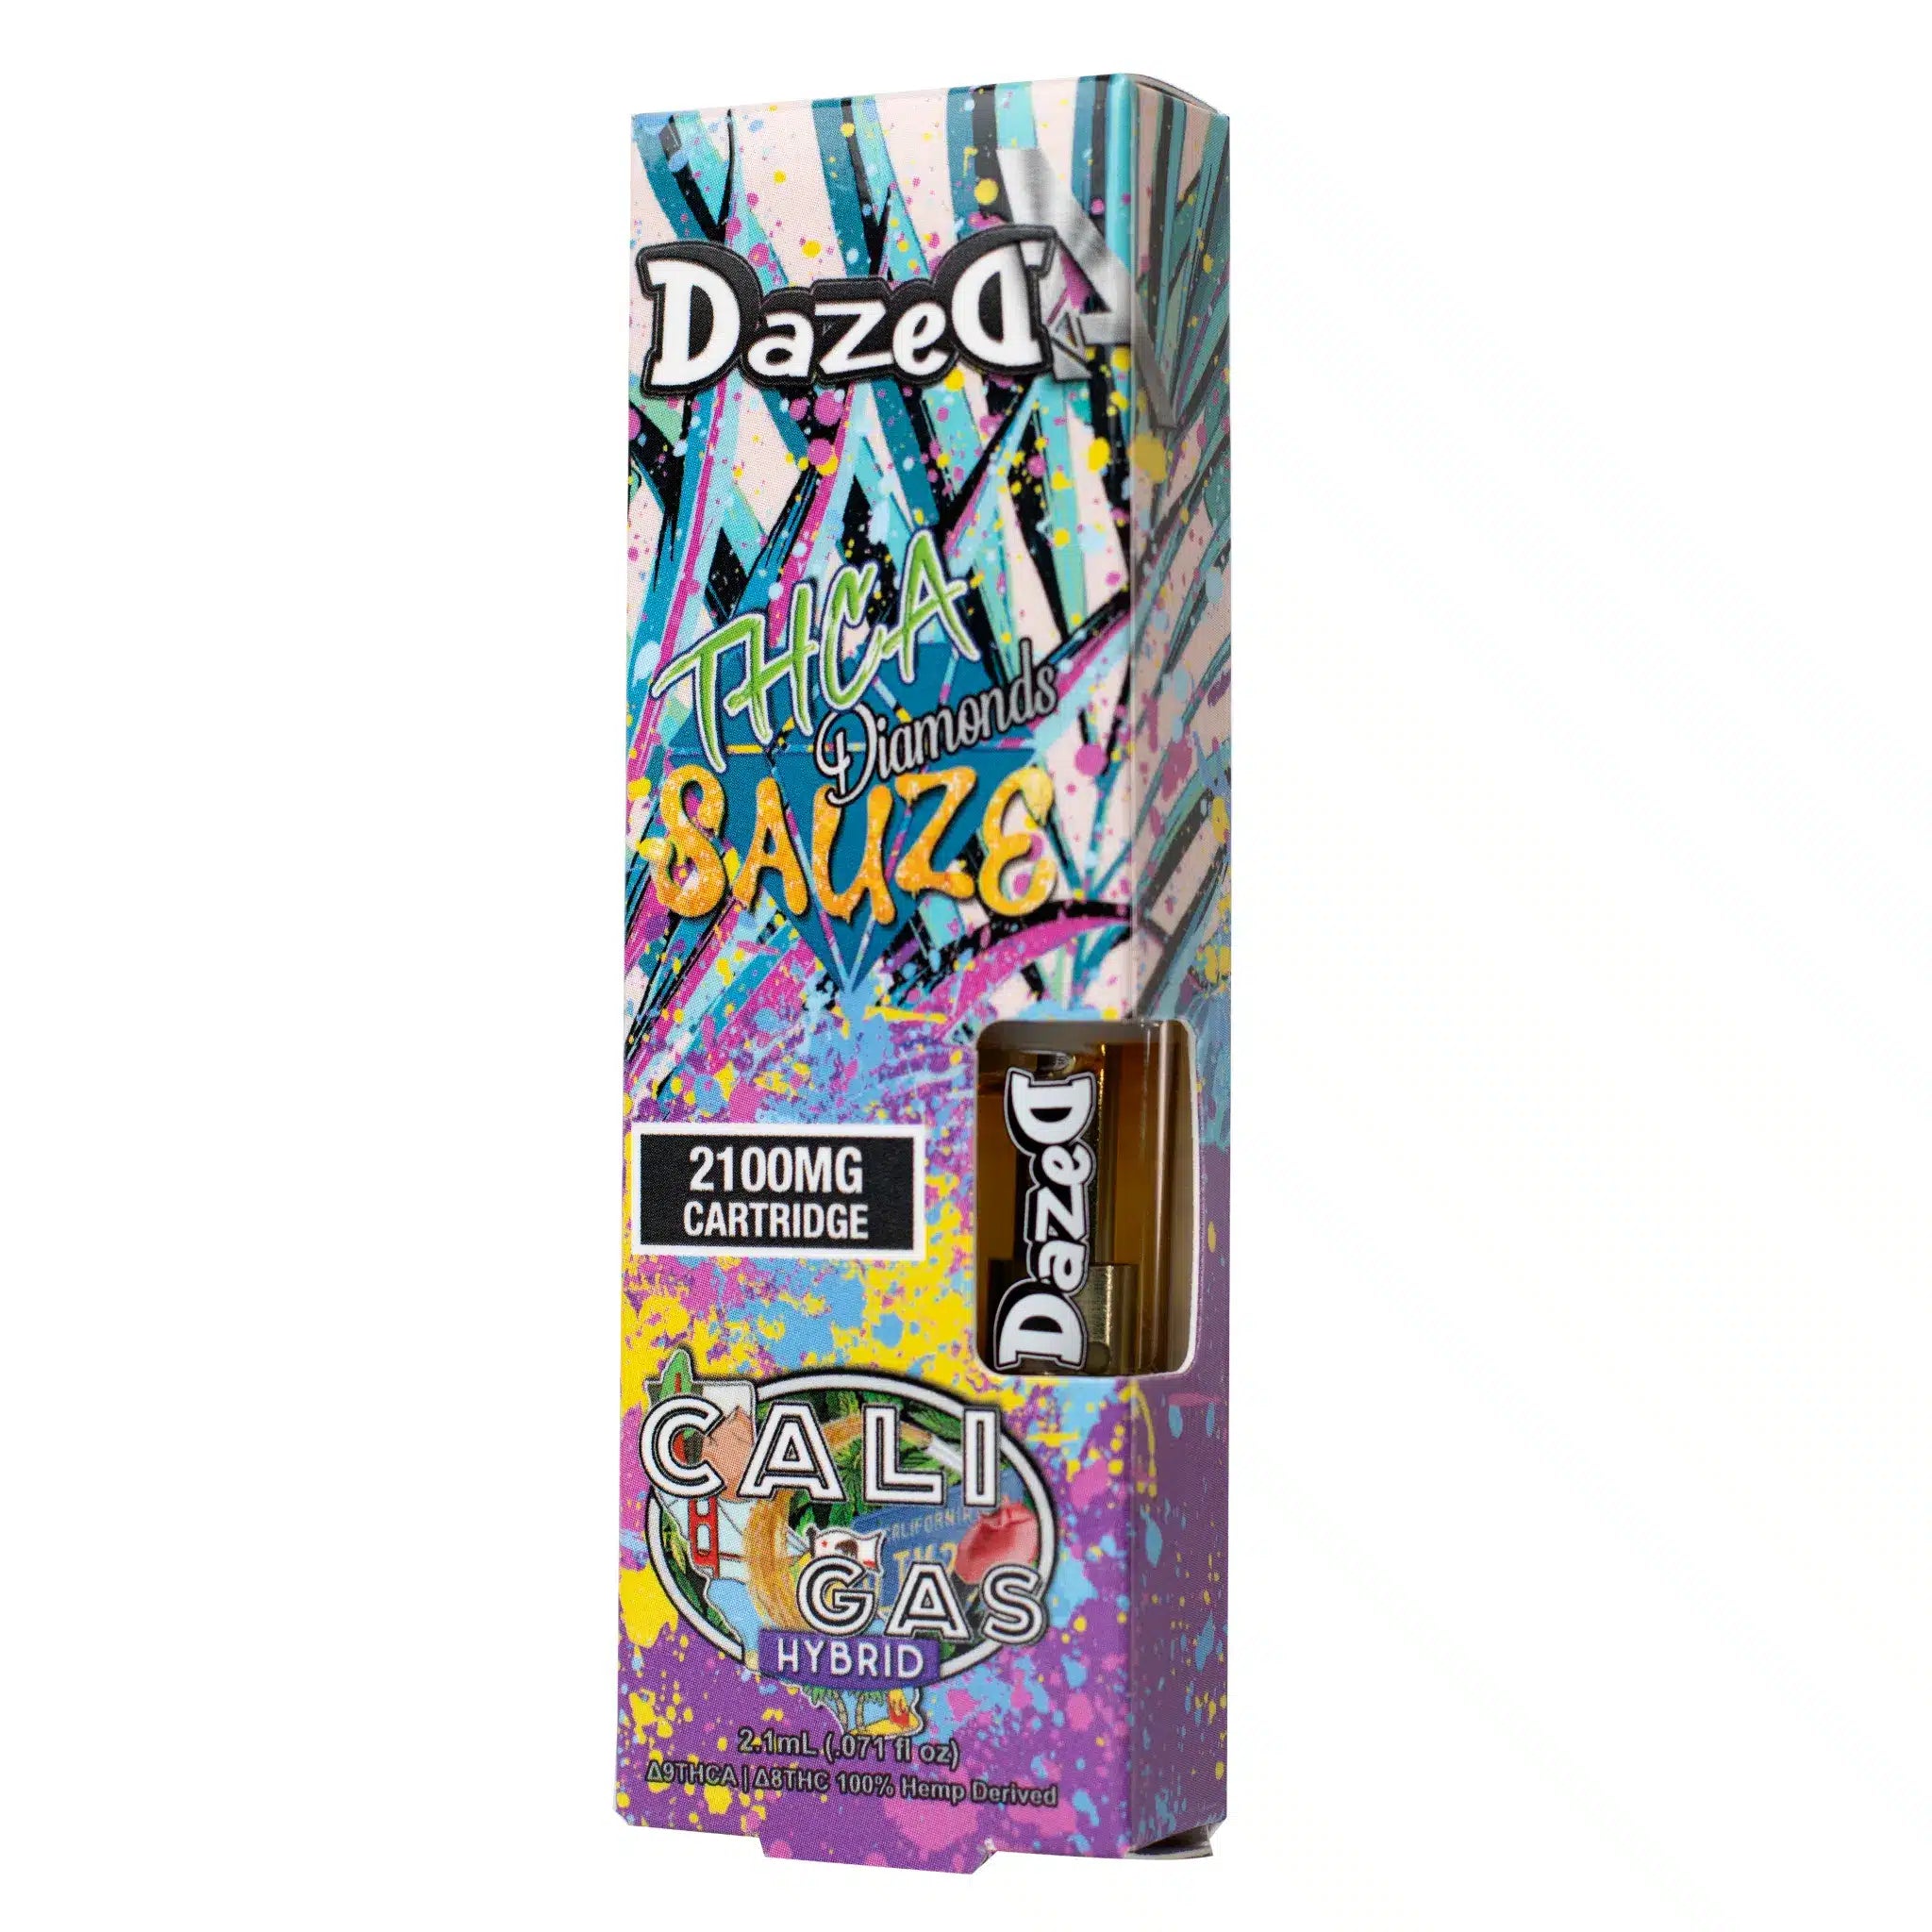 DazedA THCA Diamonds Sauze Vape Cartridge Cali Gas 2.1g Best Price